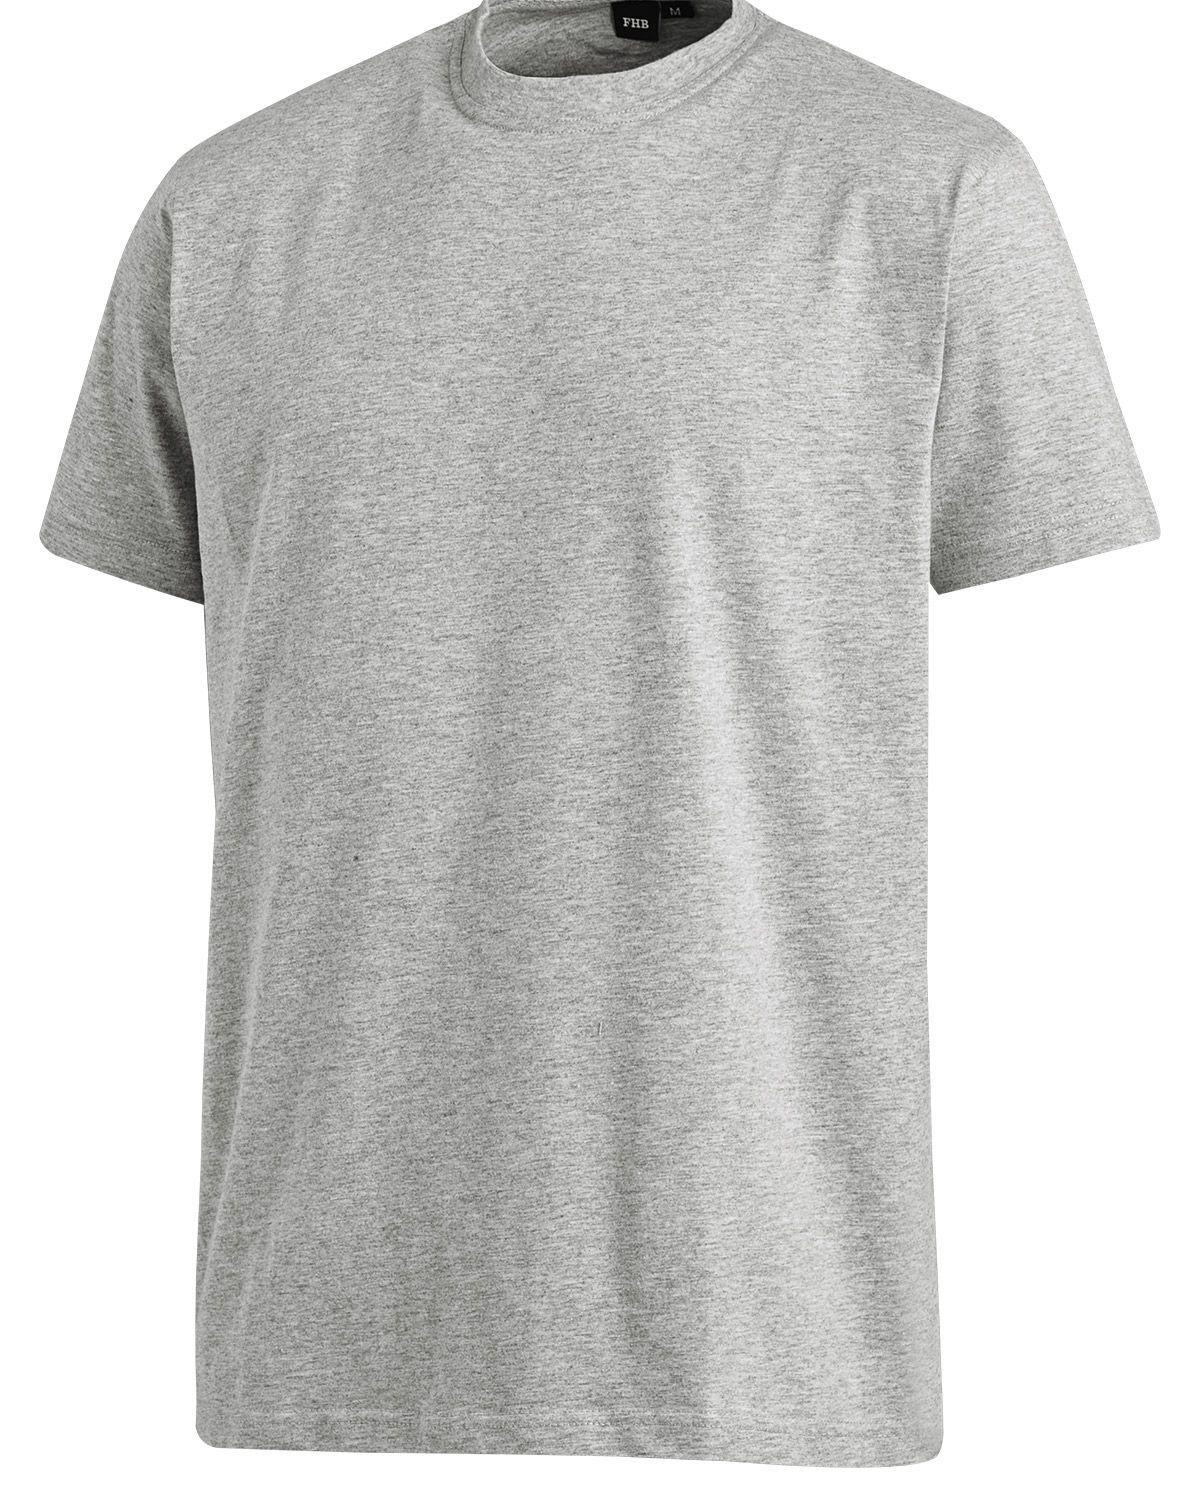 FHB T-Shirt - Jens (Grå, S)